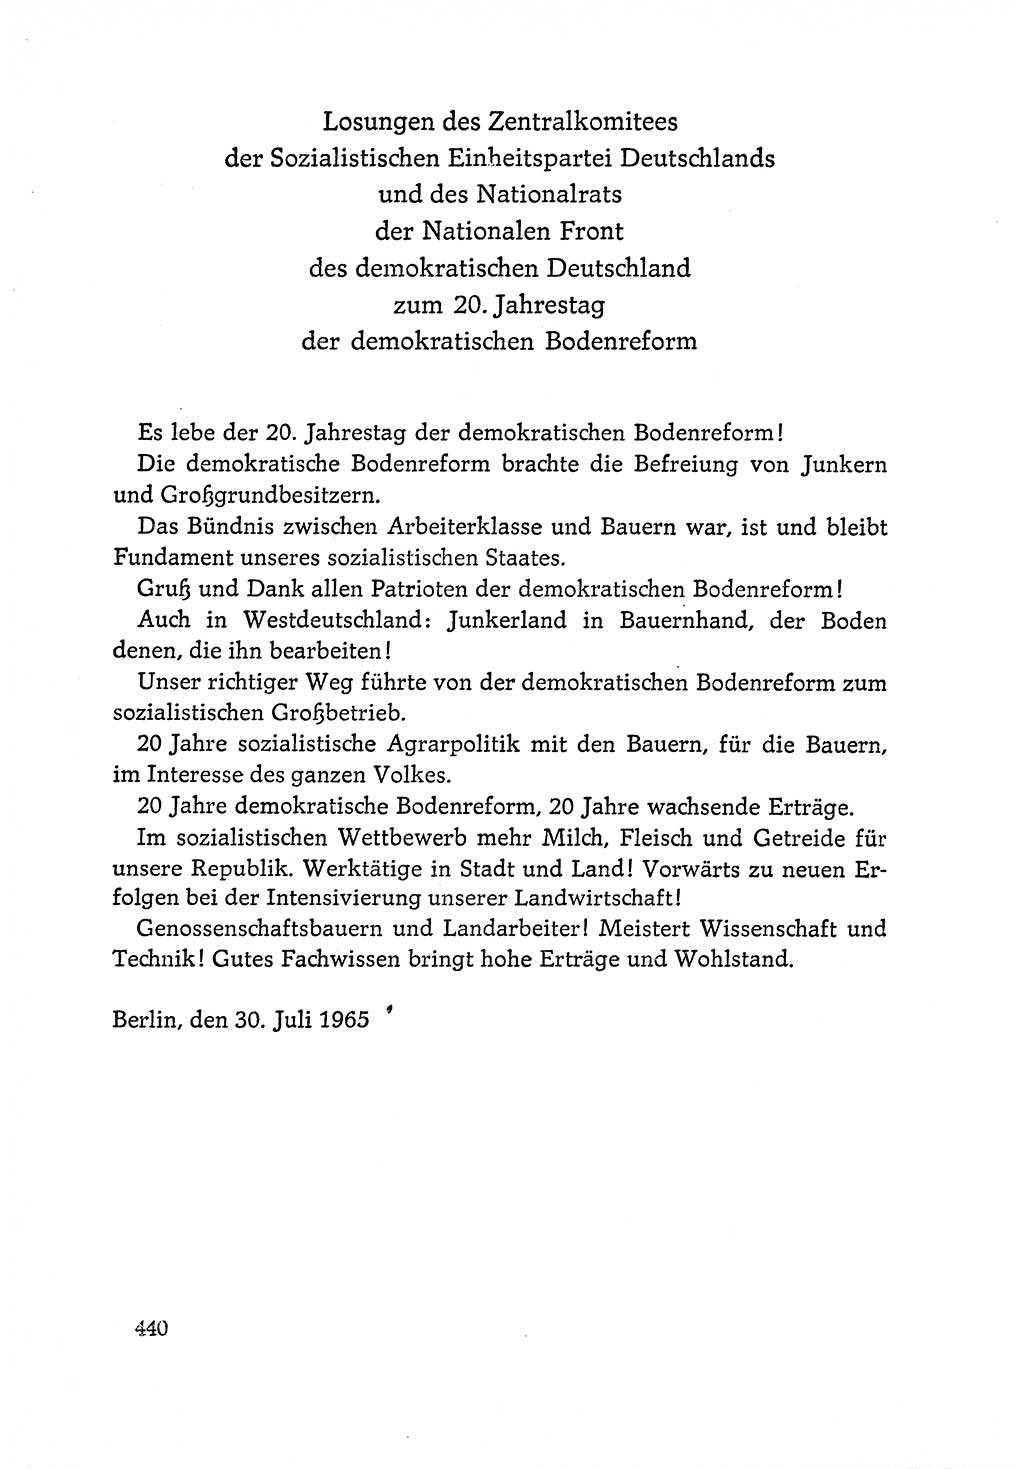 Dokumente der Sozialistischen Einheitspartei Deutschlands (SED) [Deutsche Demokratische Republik (DDR)] 1964-1965, Seite 440 (Dok. SED DDR 1964-1965, S. 440)